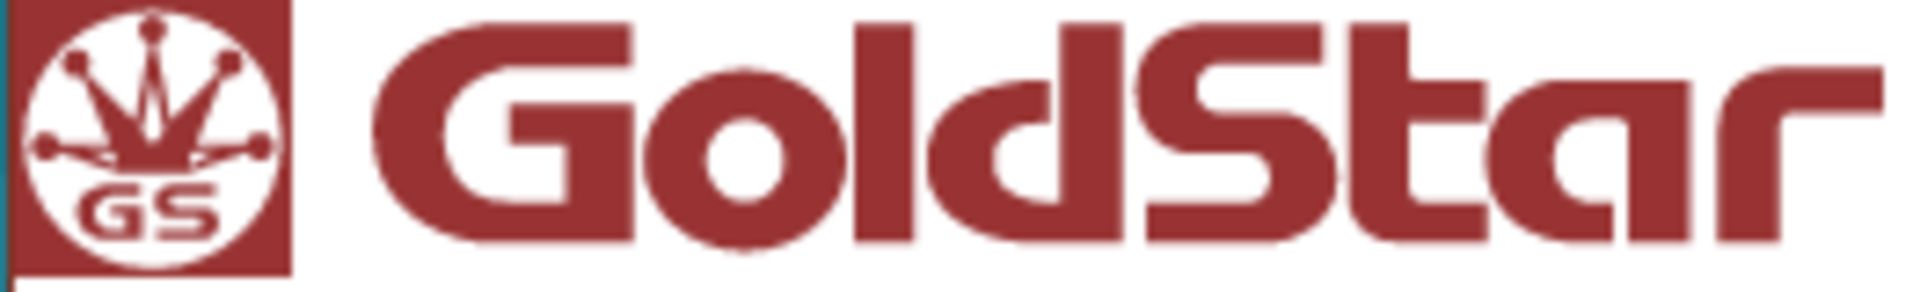 Goldstar logo21